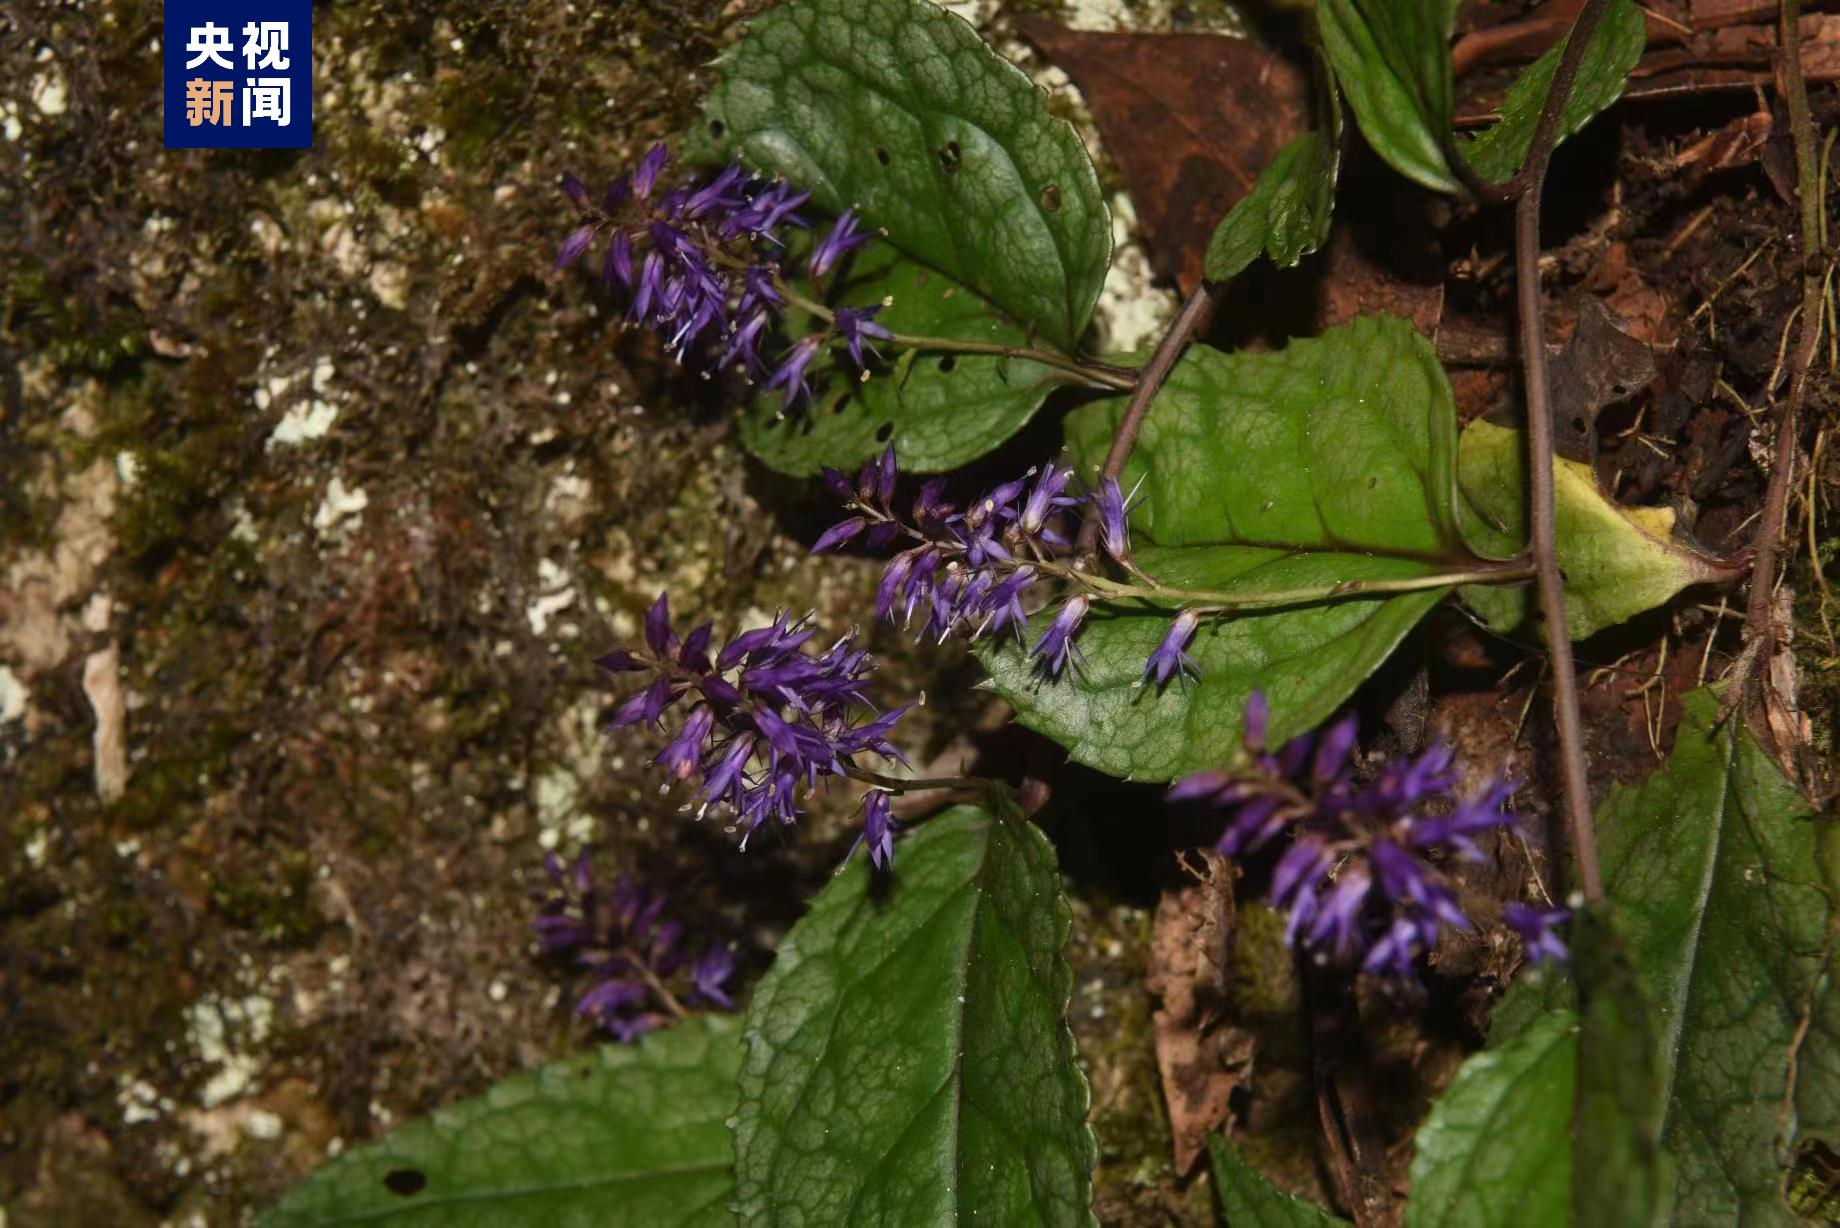 ค้นพบพืชสายพันธุ์ใหม่ที่ภูเขาทางตะวันตกเฉียงใต้ของมณฑลหูเป่ย์